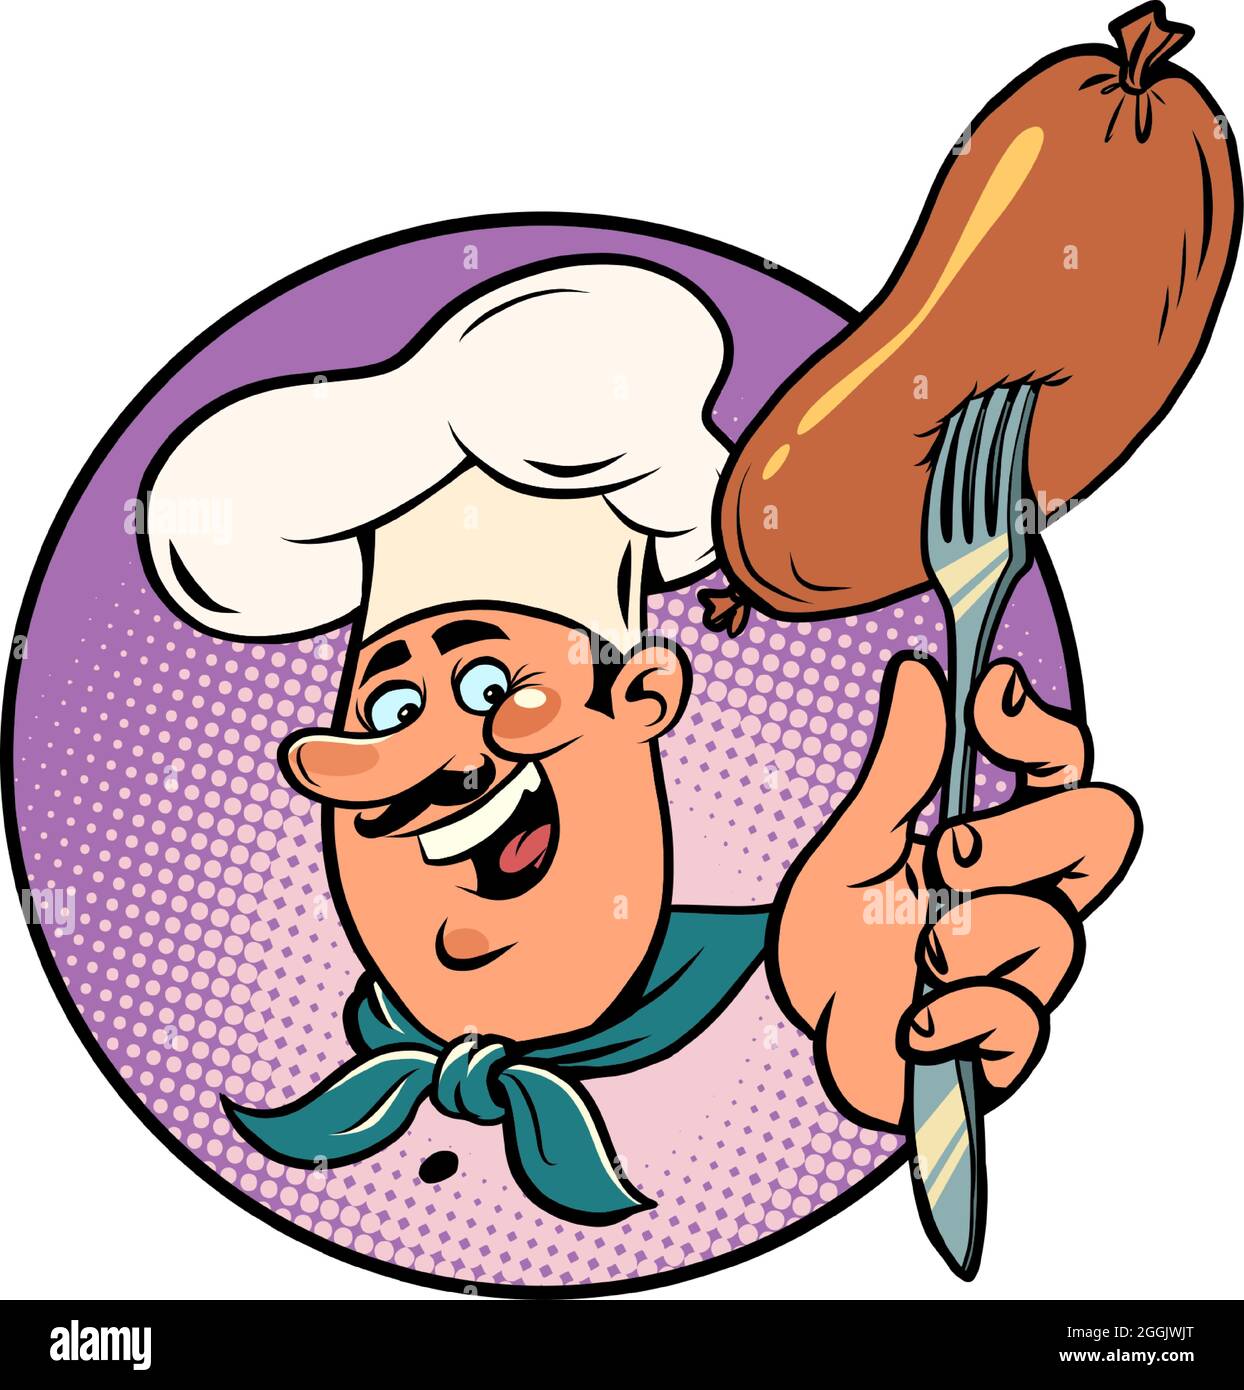 la saucisse est bouillie ou frite, le cuisinier joyeux a préparé la nourriture. Pique-nique ou restaurant Illustration de Vecteur